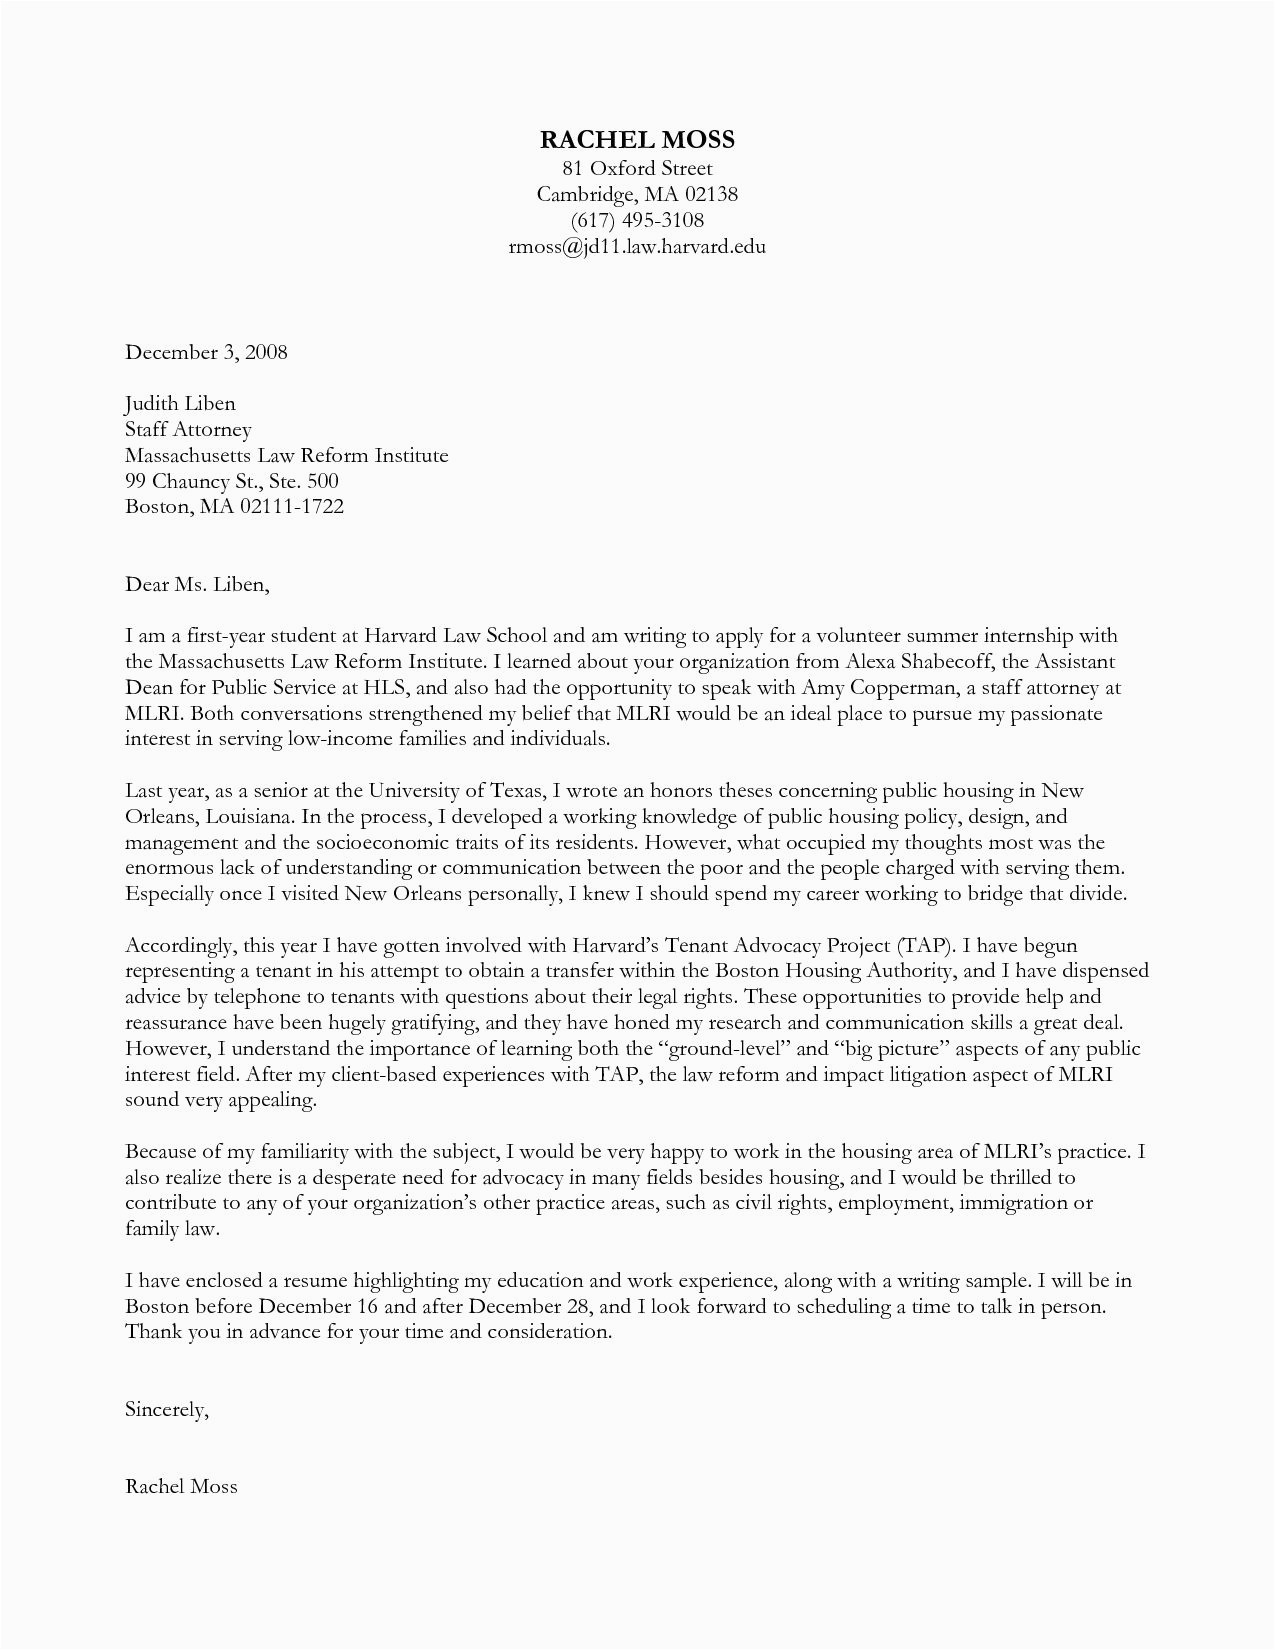 Sample Of Cover Letter for Resume at Harvard Harvard Application Letter Sample